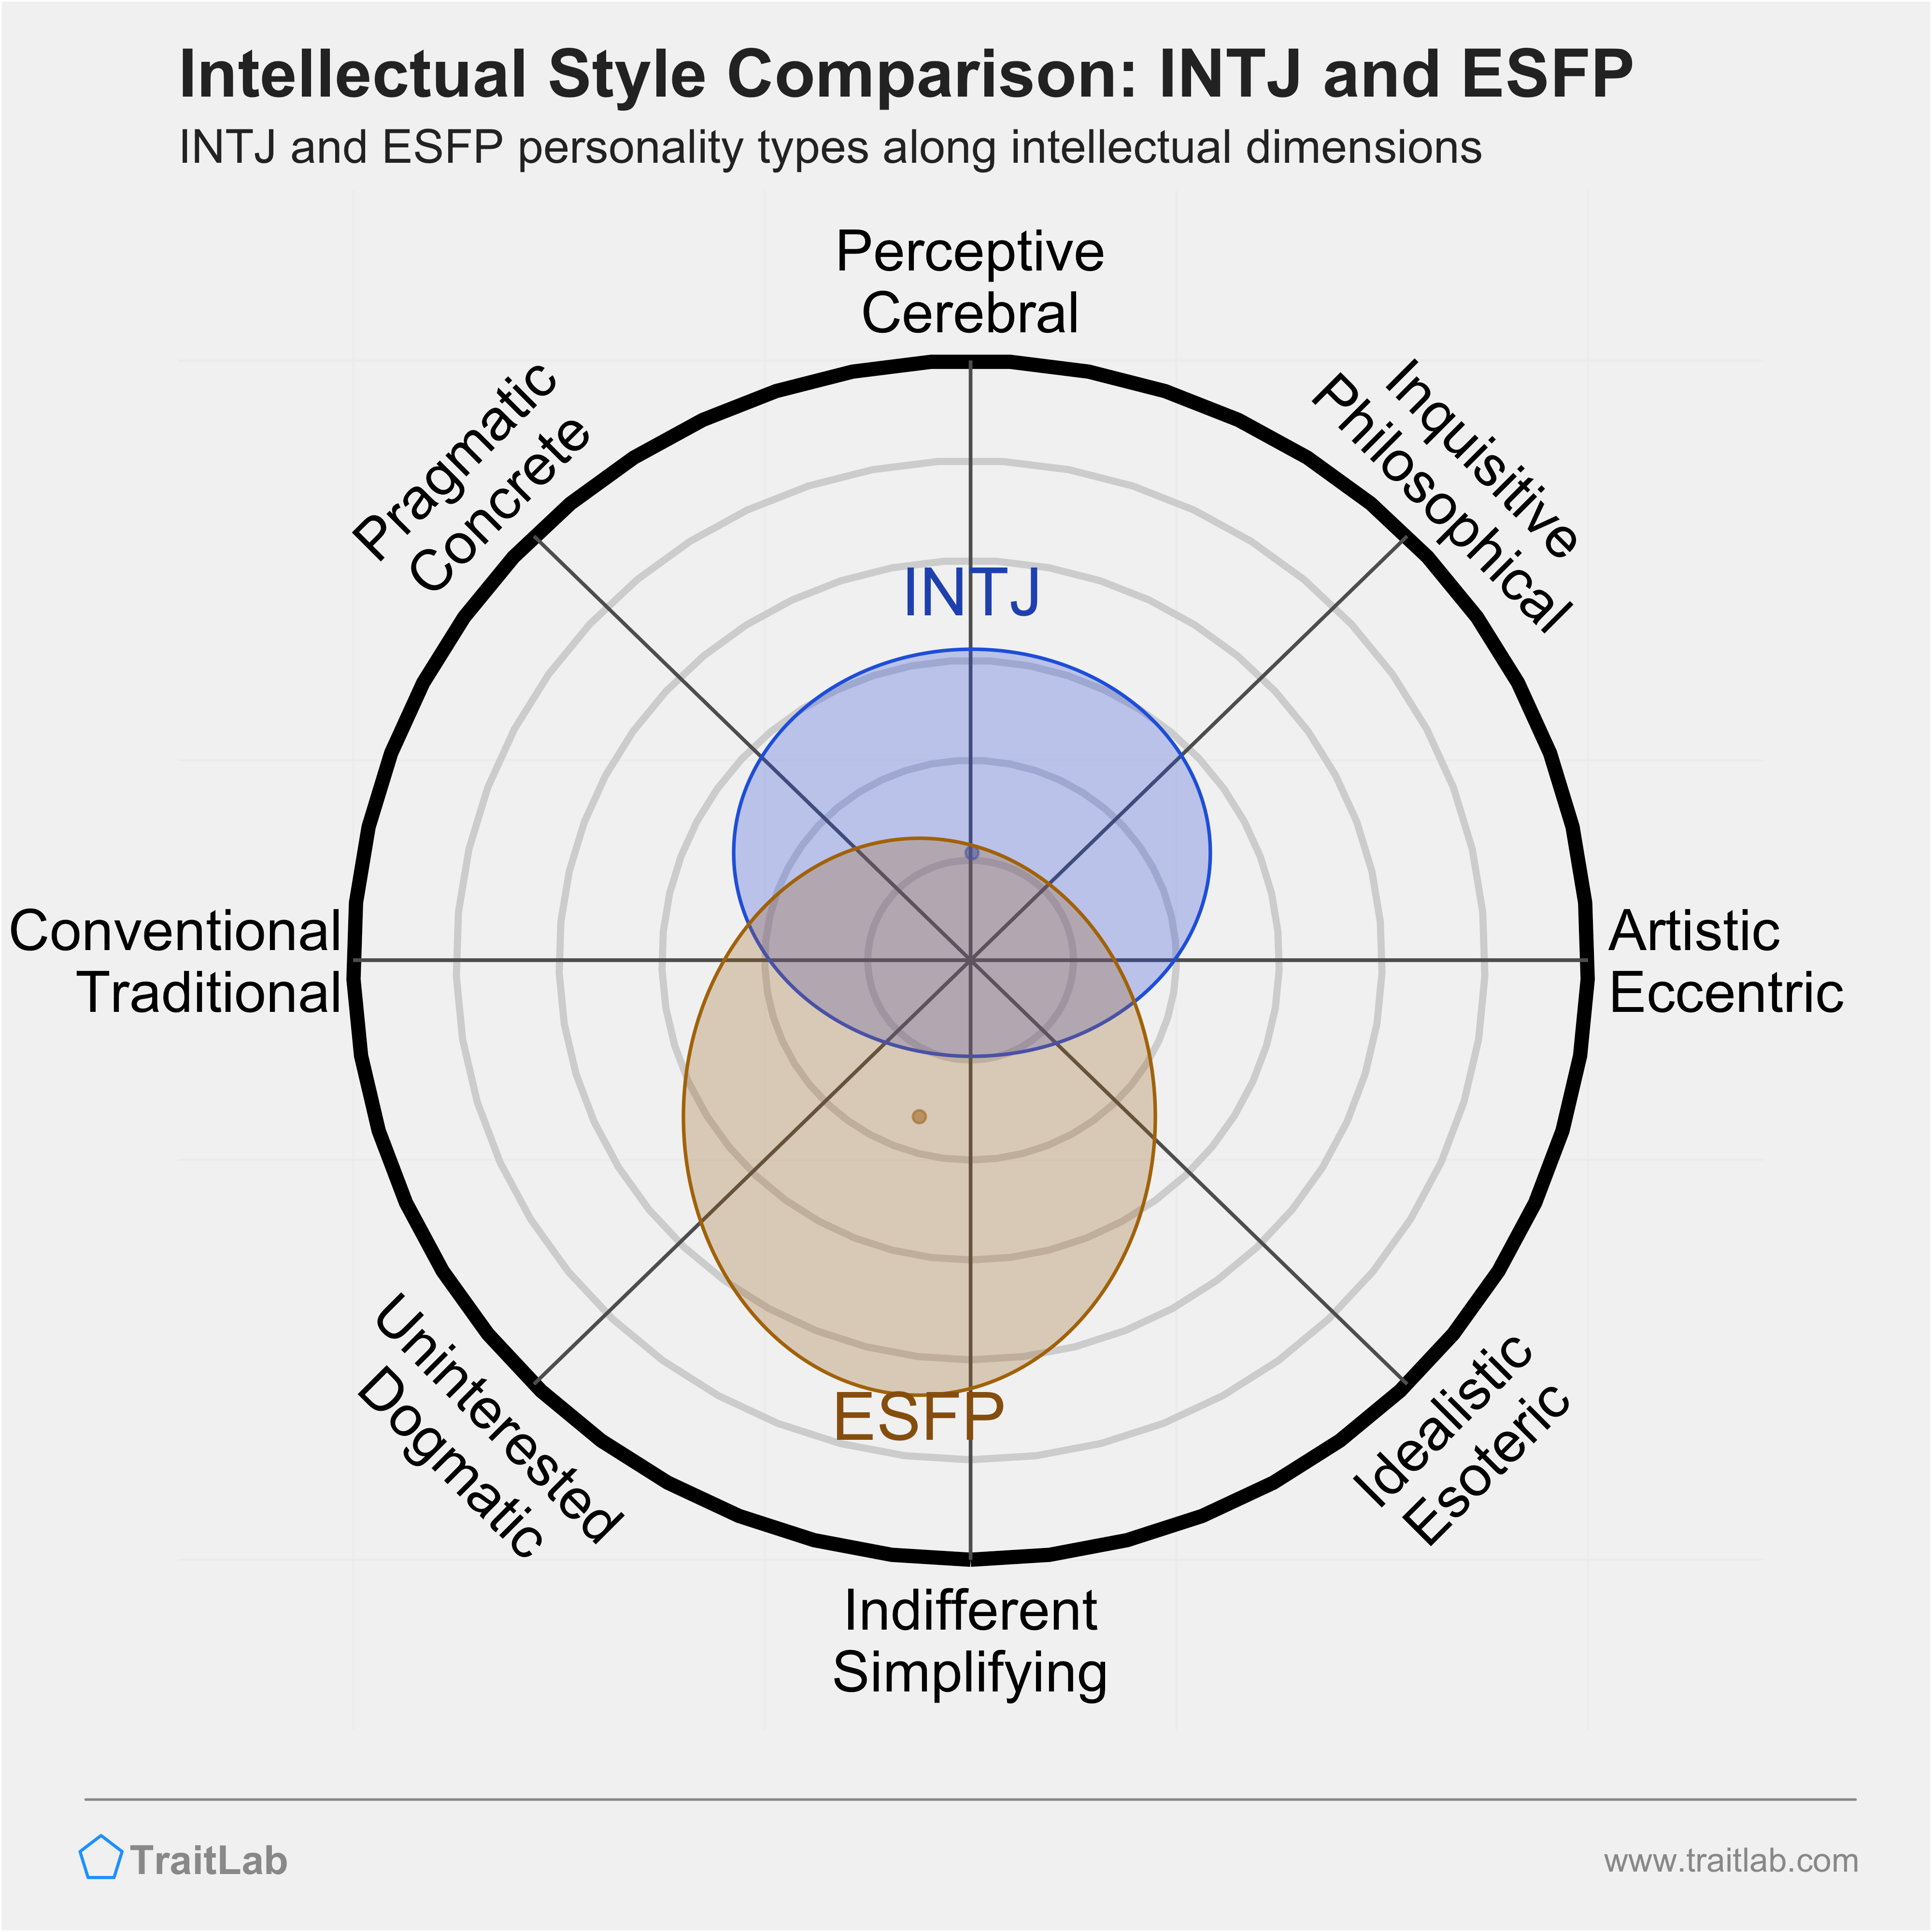 INTJ and ESFP comparison across intellectual dimensions